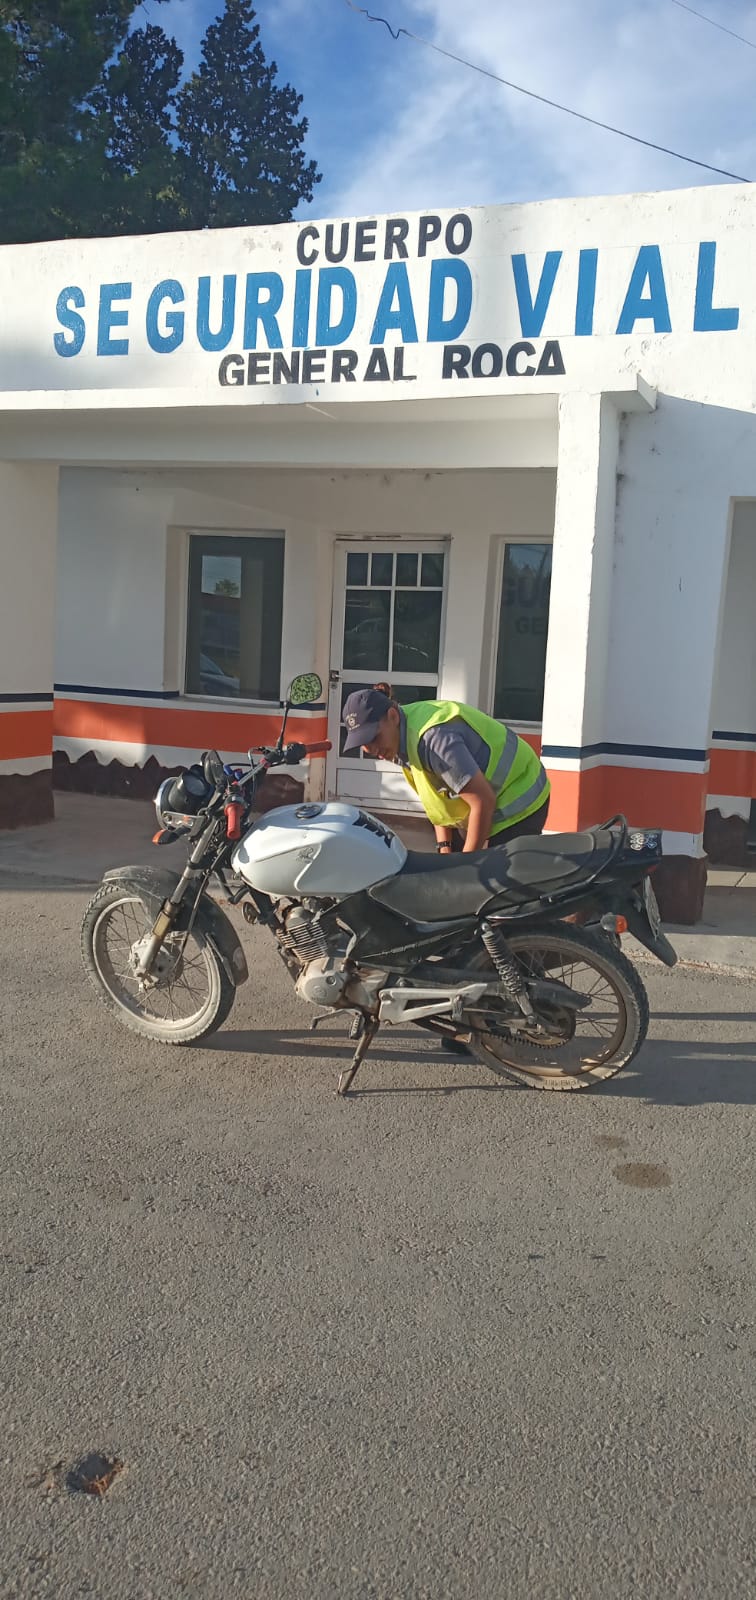 La moto secuestrada en Roca tenía pedido de secuestro desde noviembre del 2020.